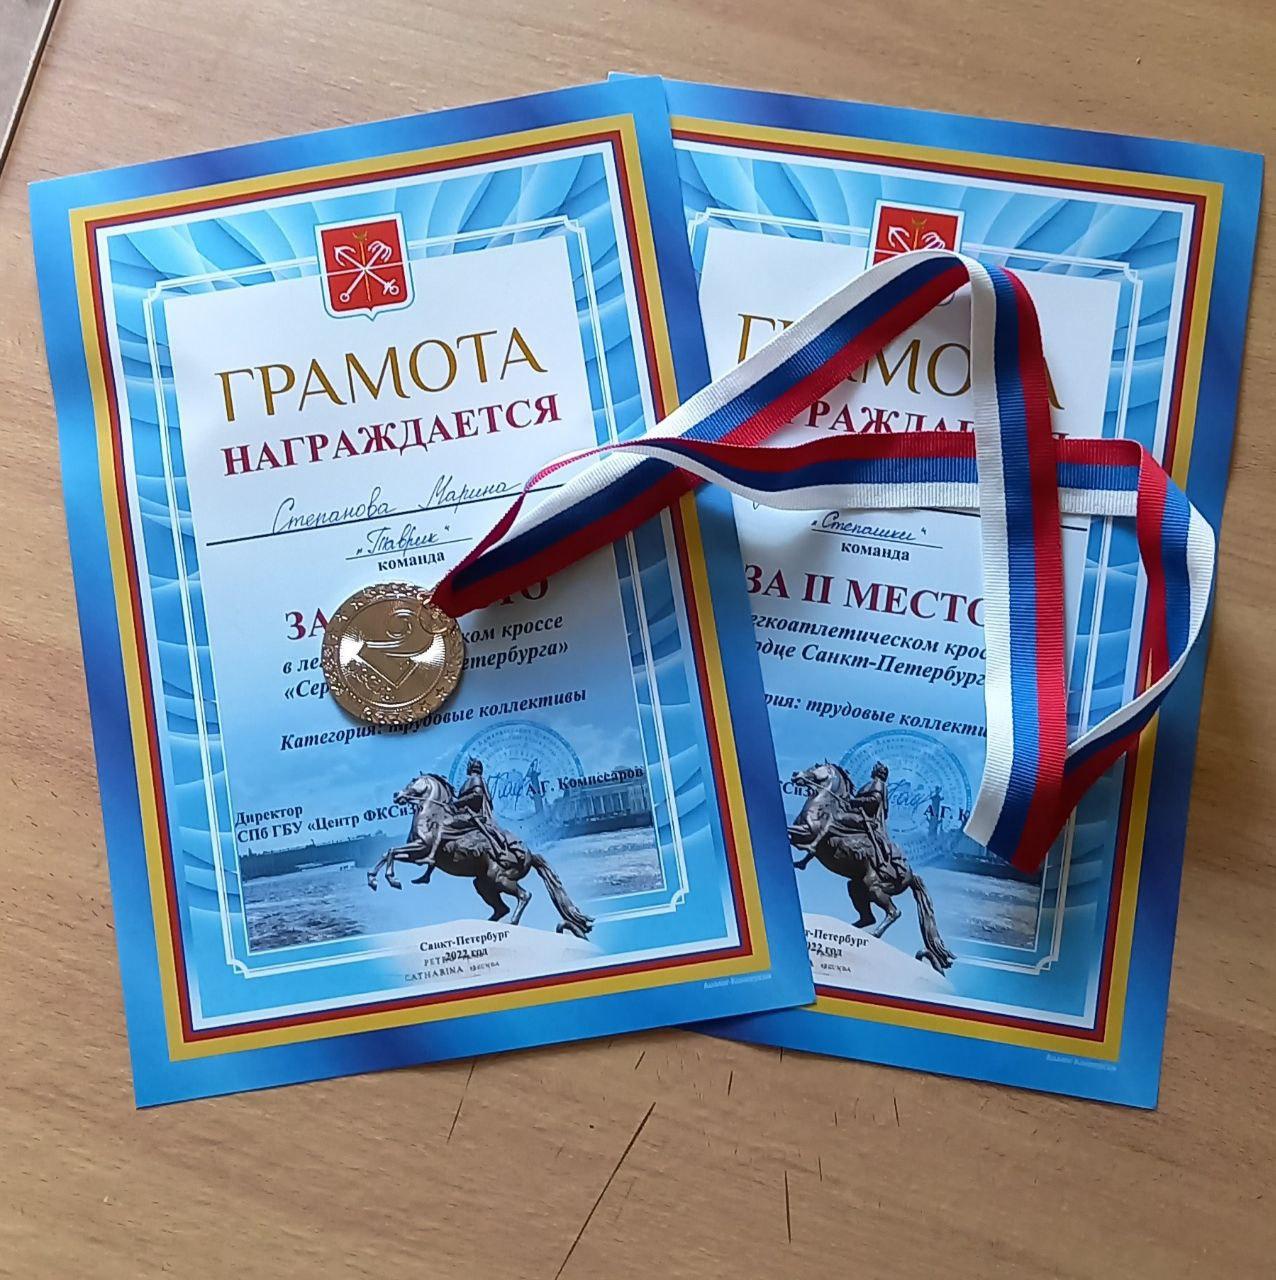 Поздравляем победителей эстафеты «Сердце Санкт-Петербурга»